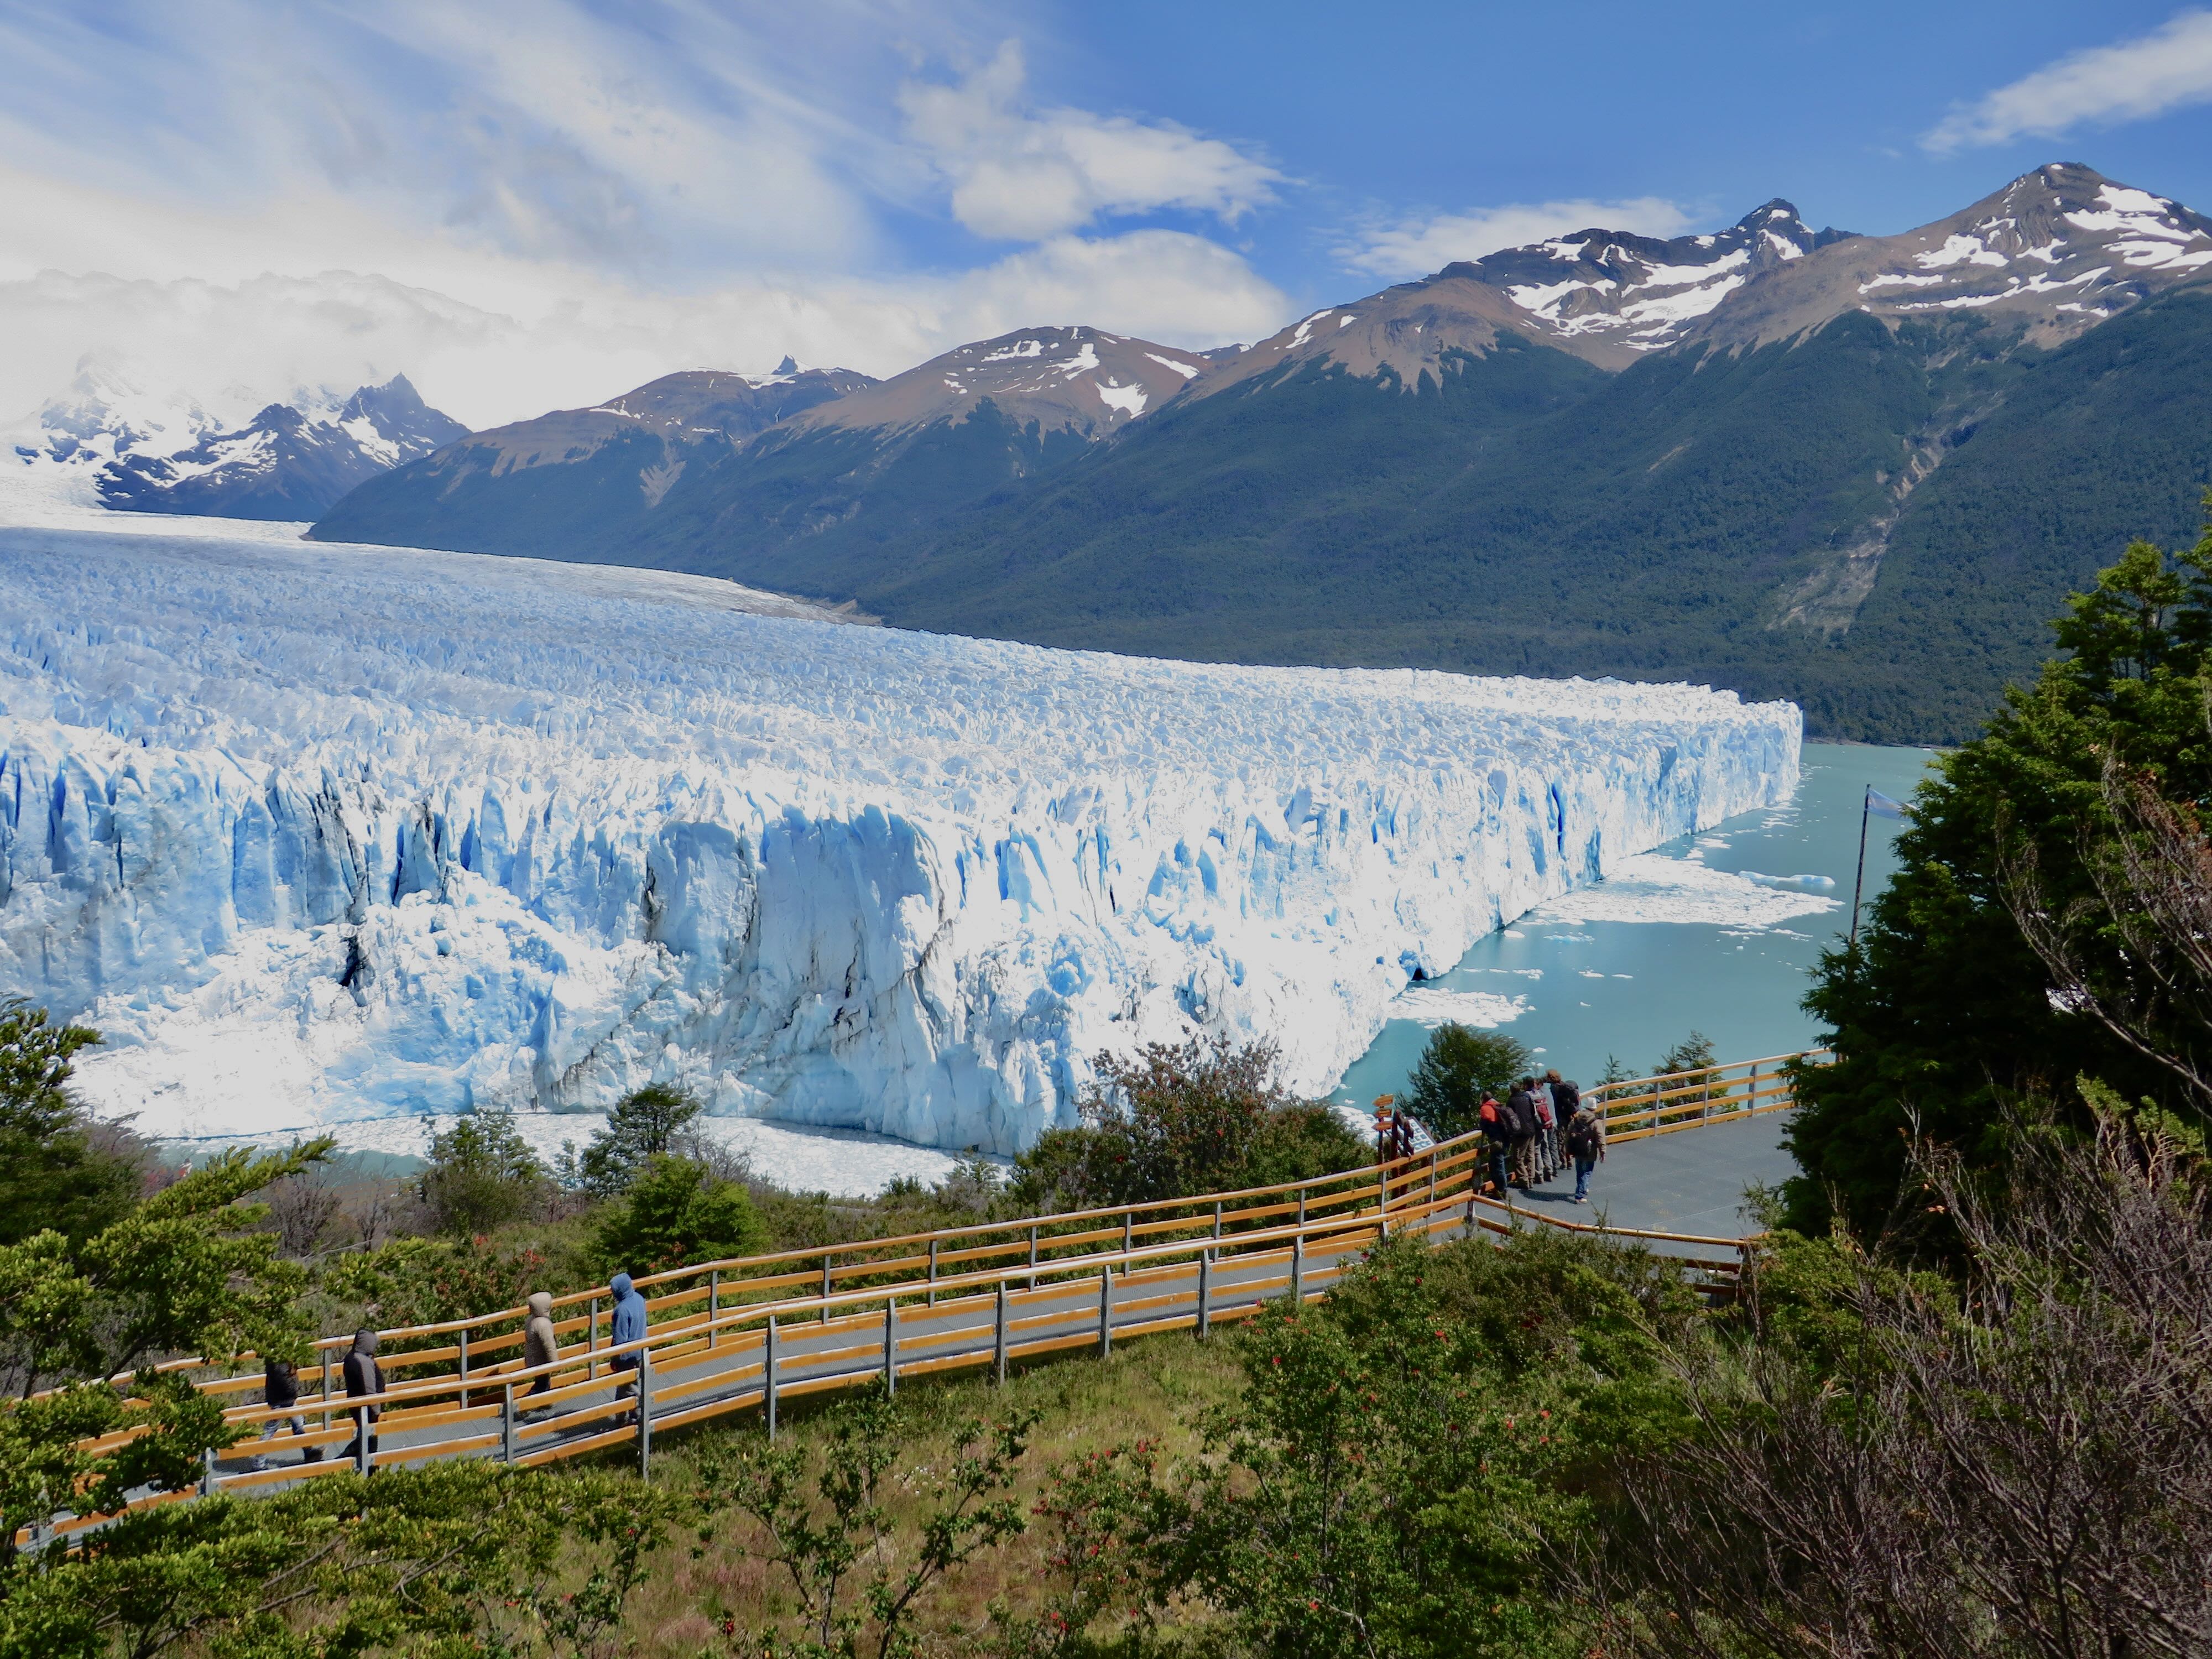 Perito Moreno Glacier Viewpoint Walkway, Perito Moreno Glacier Tour